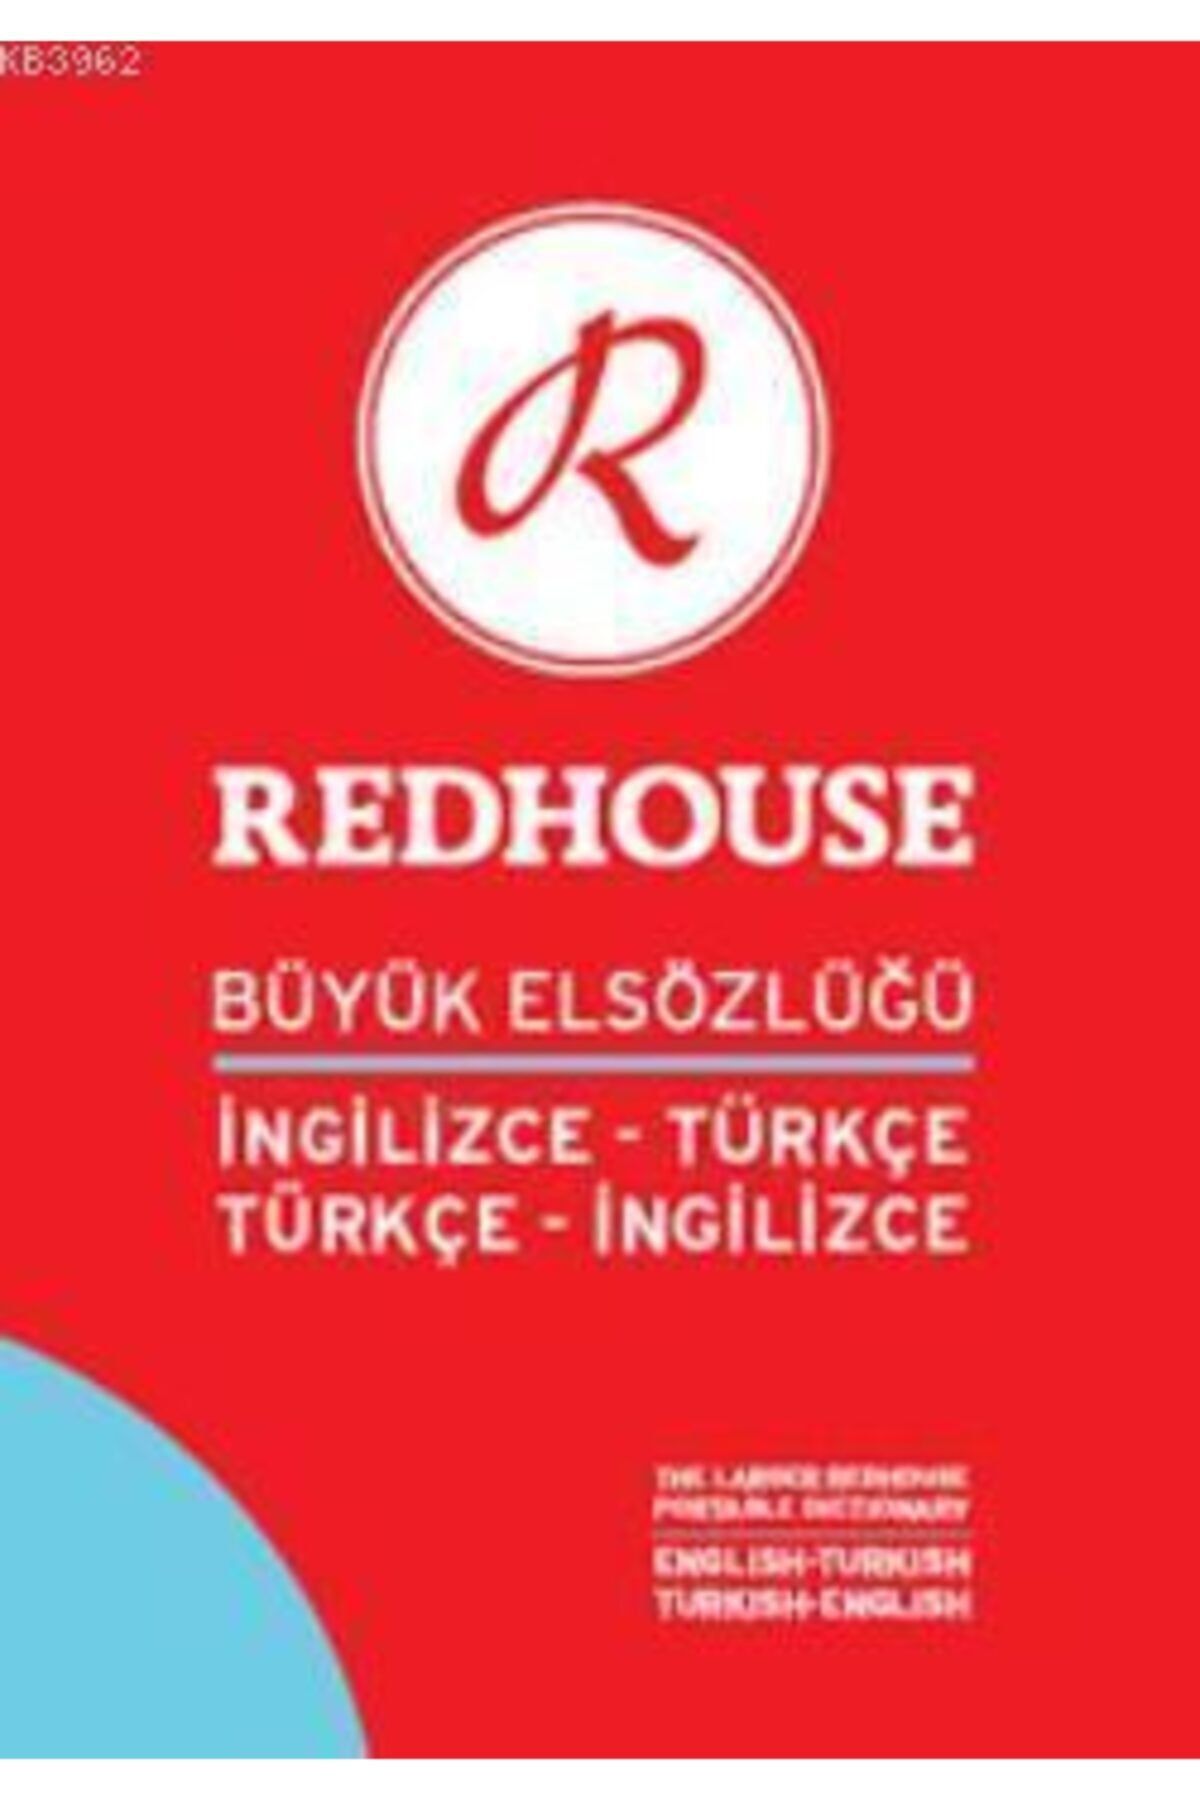 Redhouse Kidz Yayınları Redhouse Büyük Elsözlüğü